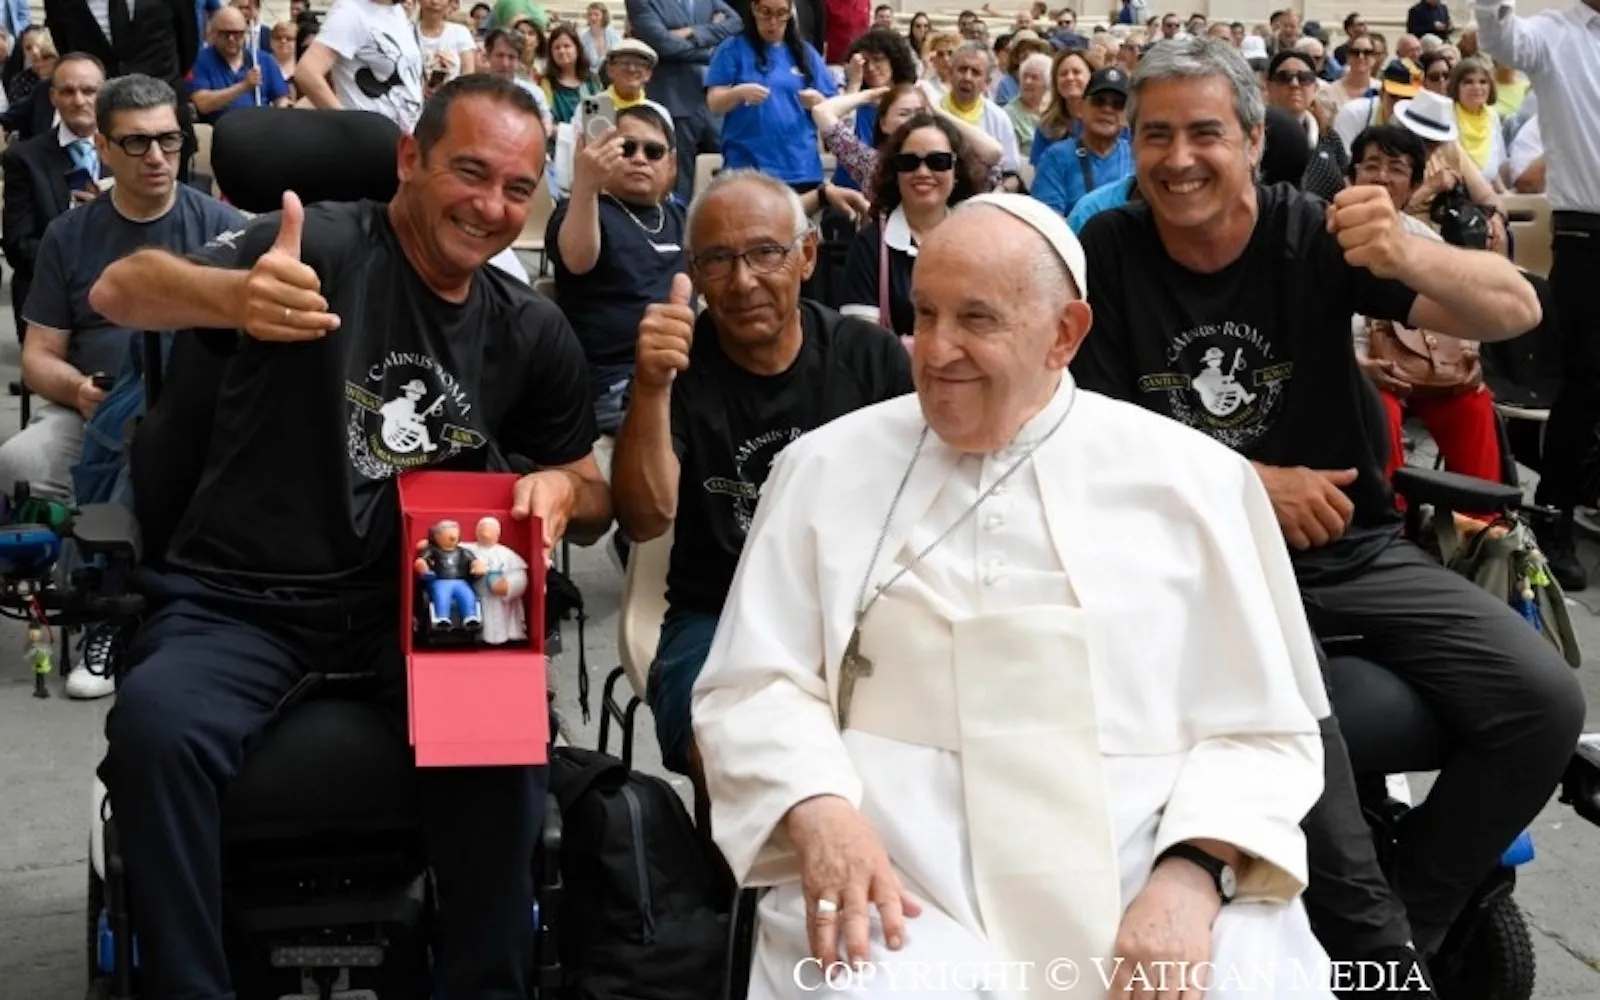 Los 3 españoles saludan al Papa Francisco tras llegar a Roma en silla de ruedas?w=200&h=150